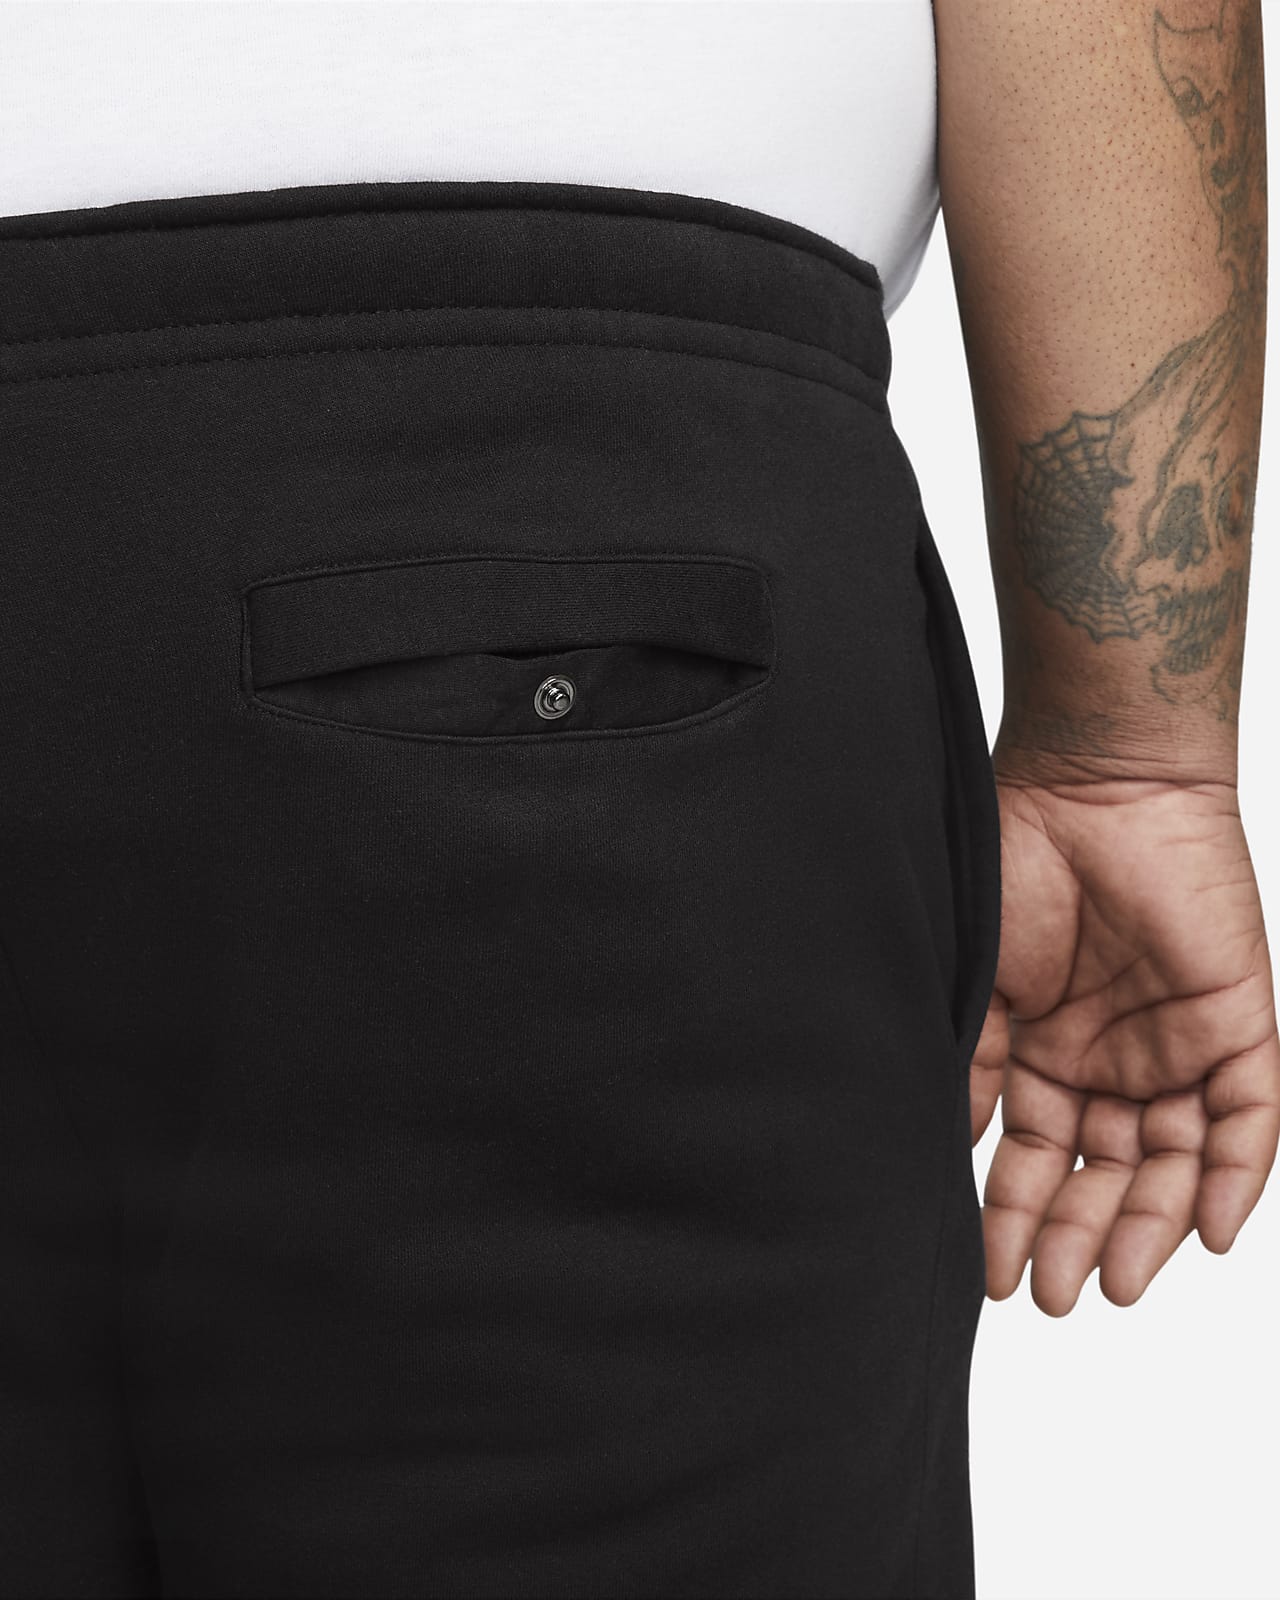 Nike Sportswear Club Fleece Joggers Mens Bottoms Black Multi Size